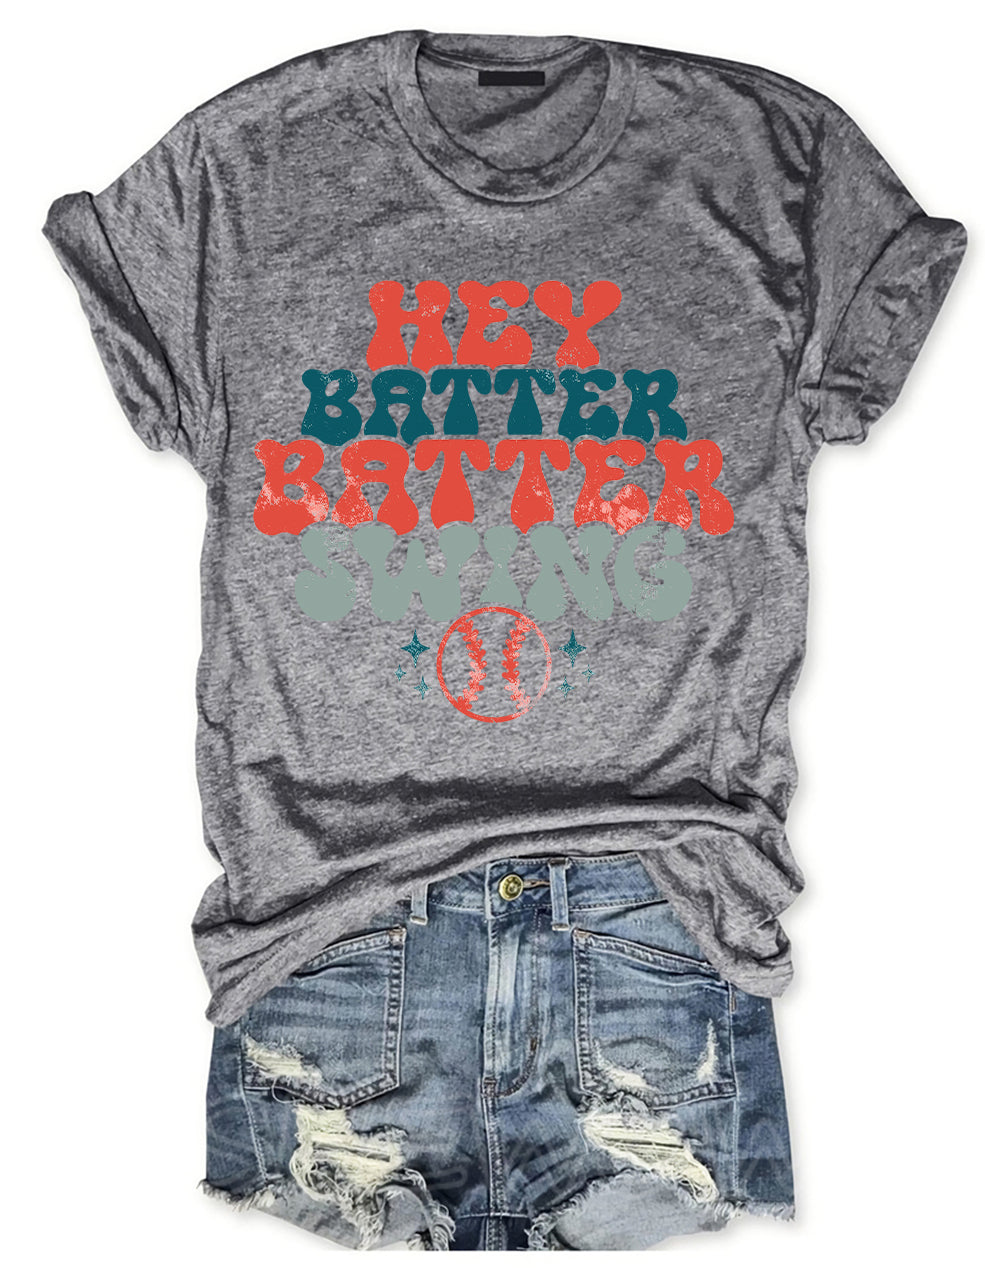 Hey Batter Batter Swing Baseball T-shirt